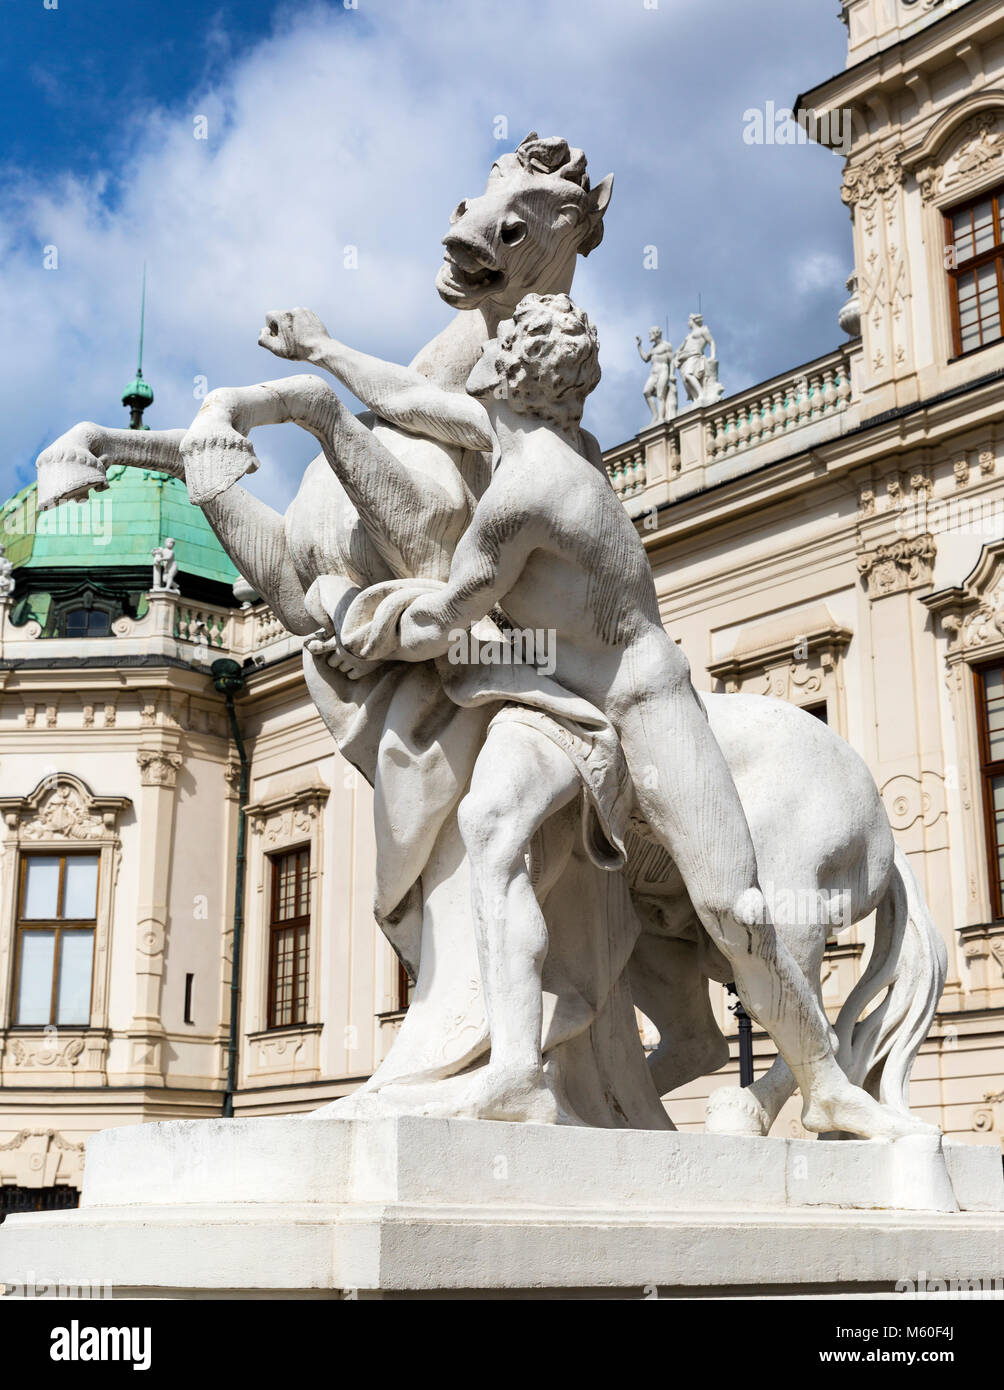 Statue eines Mannes auf einem Pferd, Oberes Belvedere, Wien, Wien, Österreich. Stockfoto